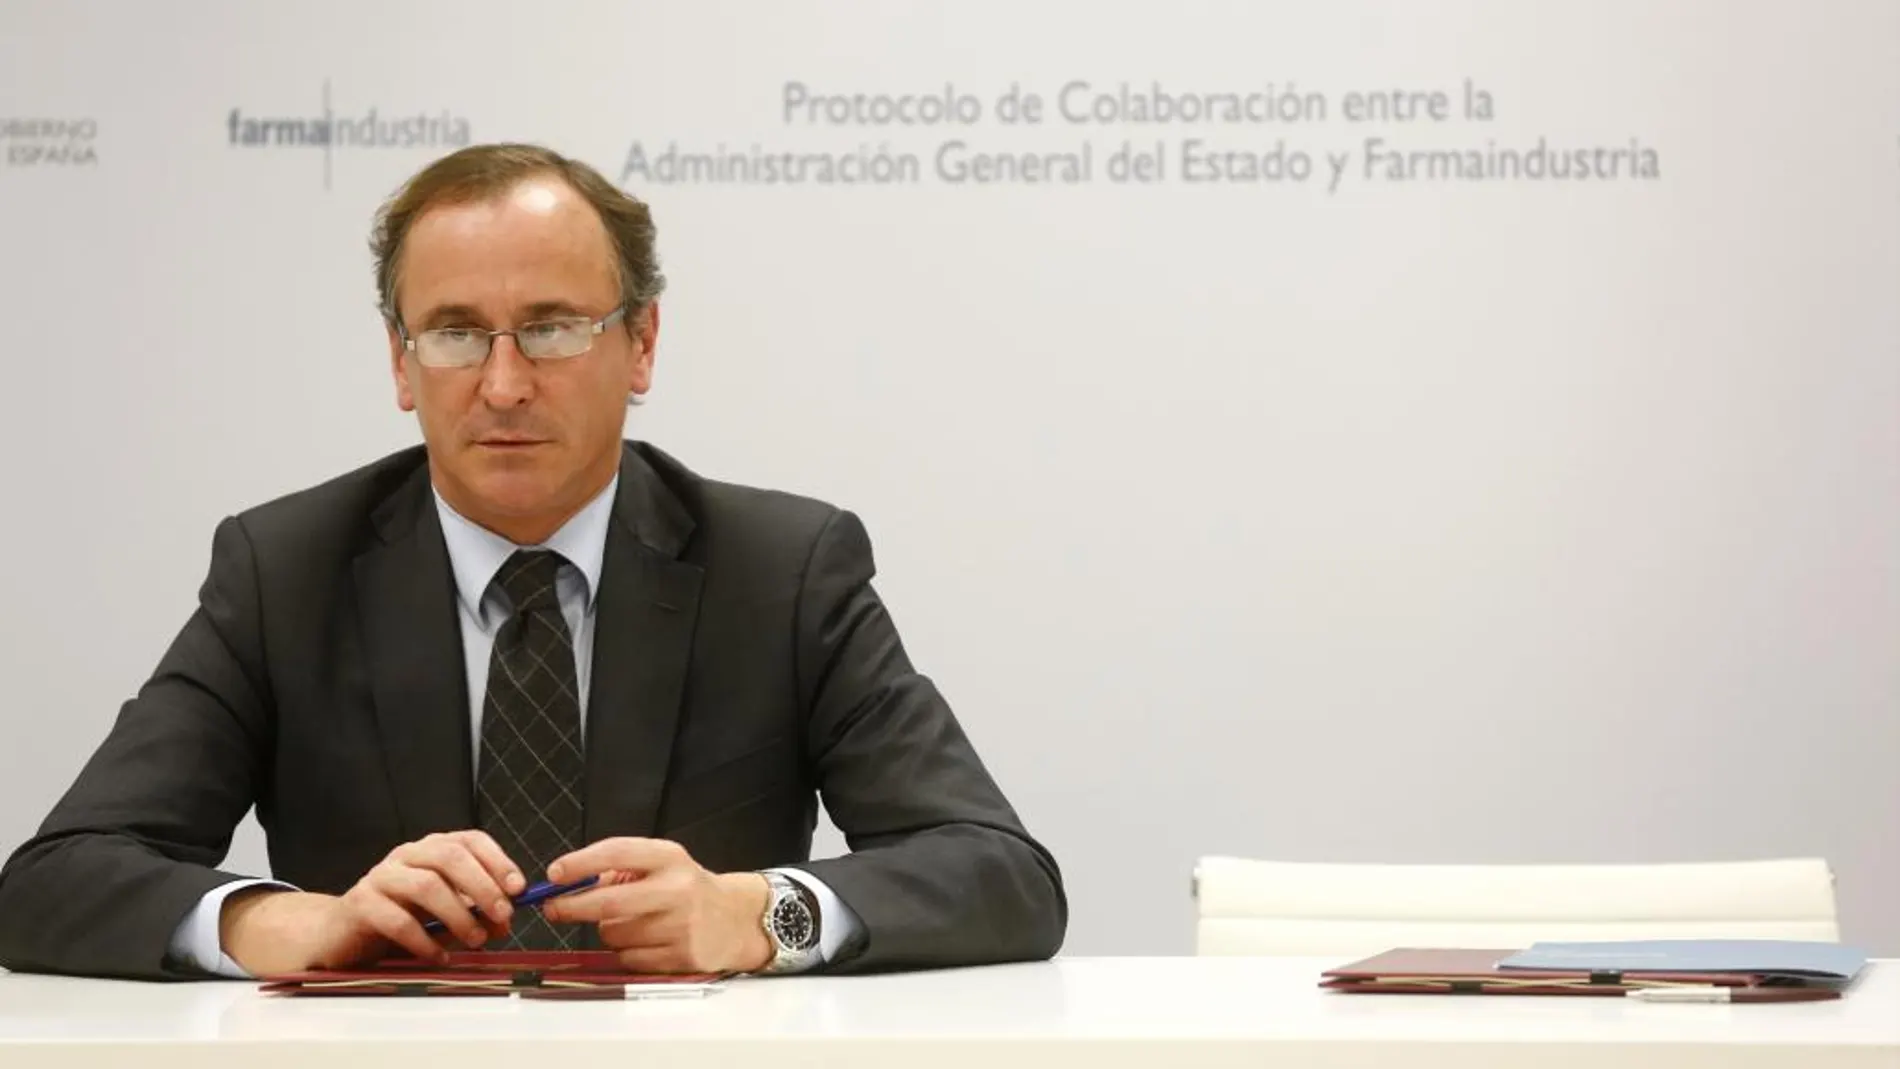 El presidente del PP de Euskadi, Alfonso Alonso, ha anunciado que ayer se comunicó a Aldecoa su despido disciplinario por las "graves irregularidades"desveladas tras la auditoría realizada a las cuentas del partido en Bizkaia en 2015.